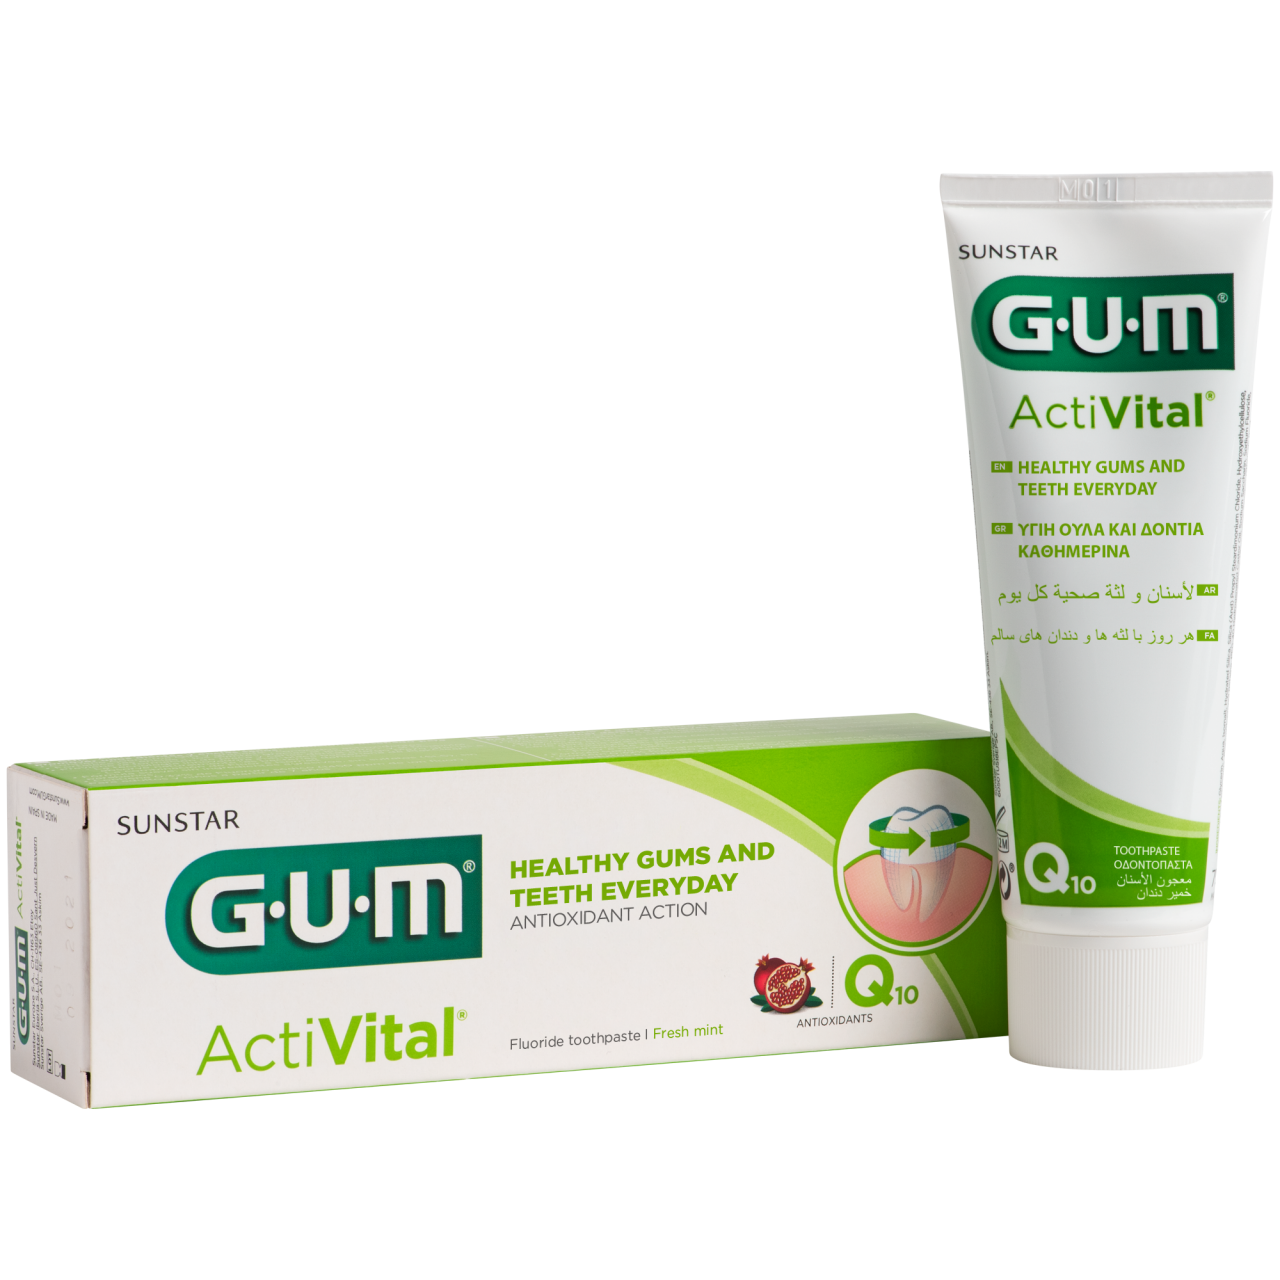 P6050-FI-SC-GUM-Activital-Toothpaste-75ml-Box-Tube